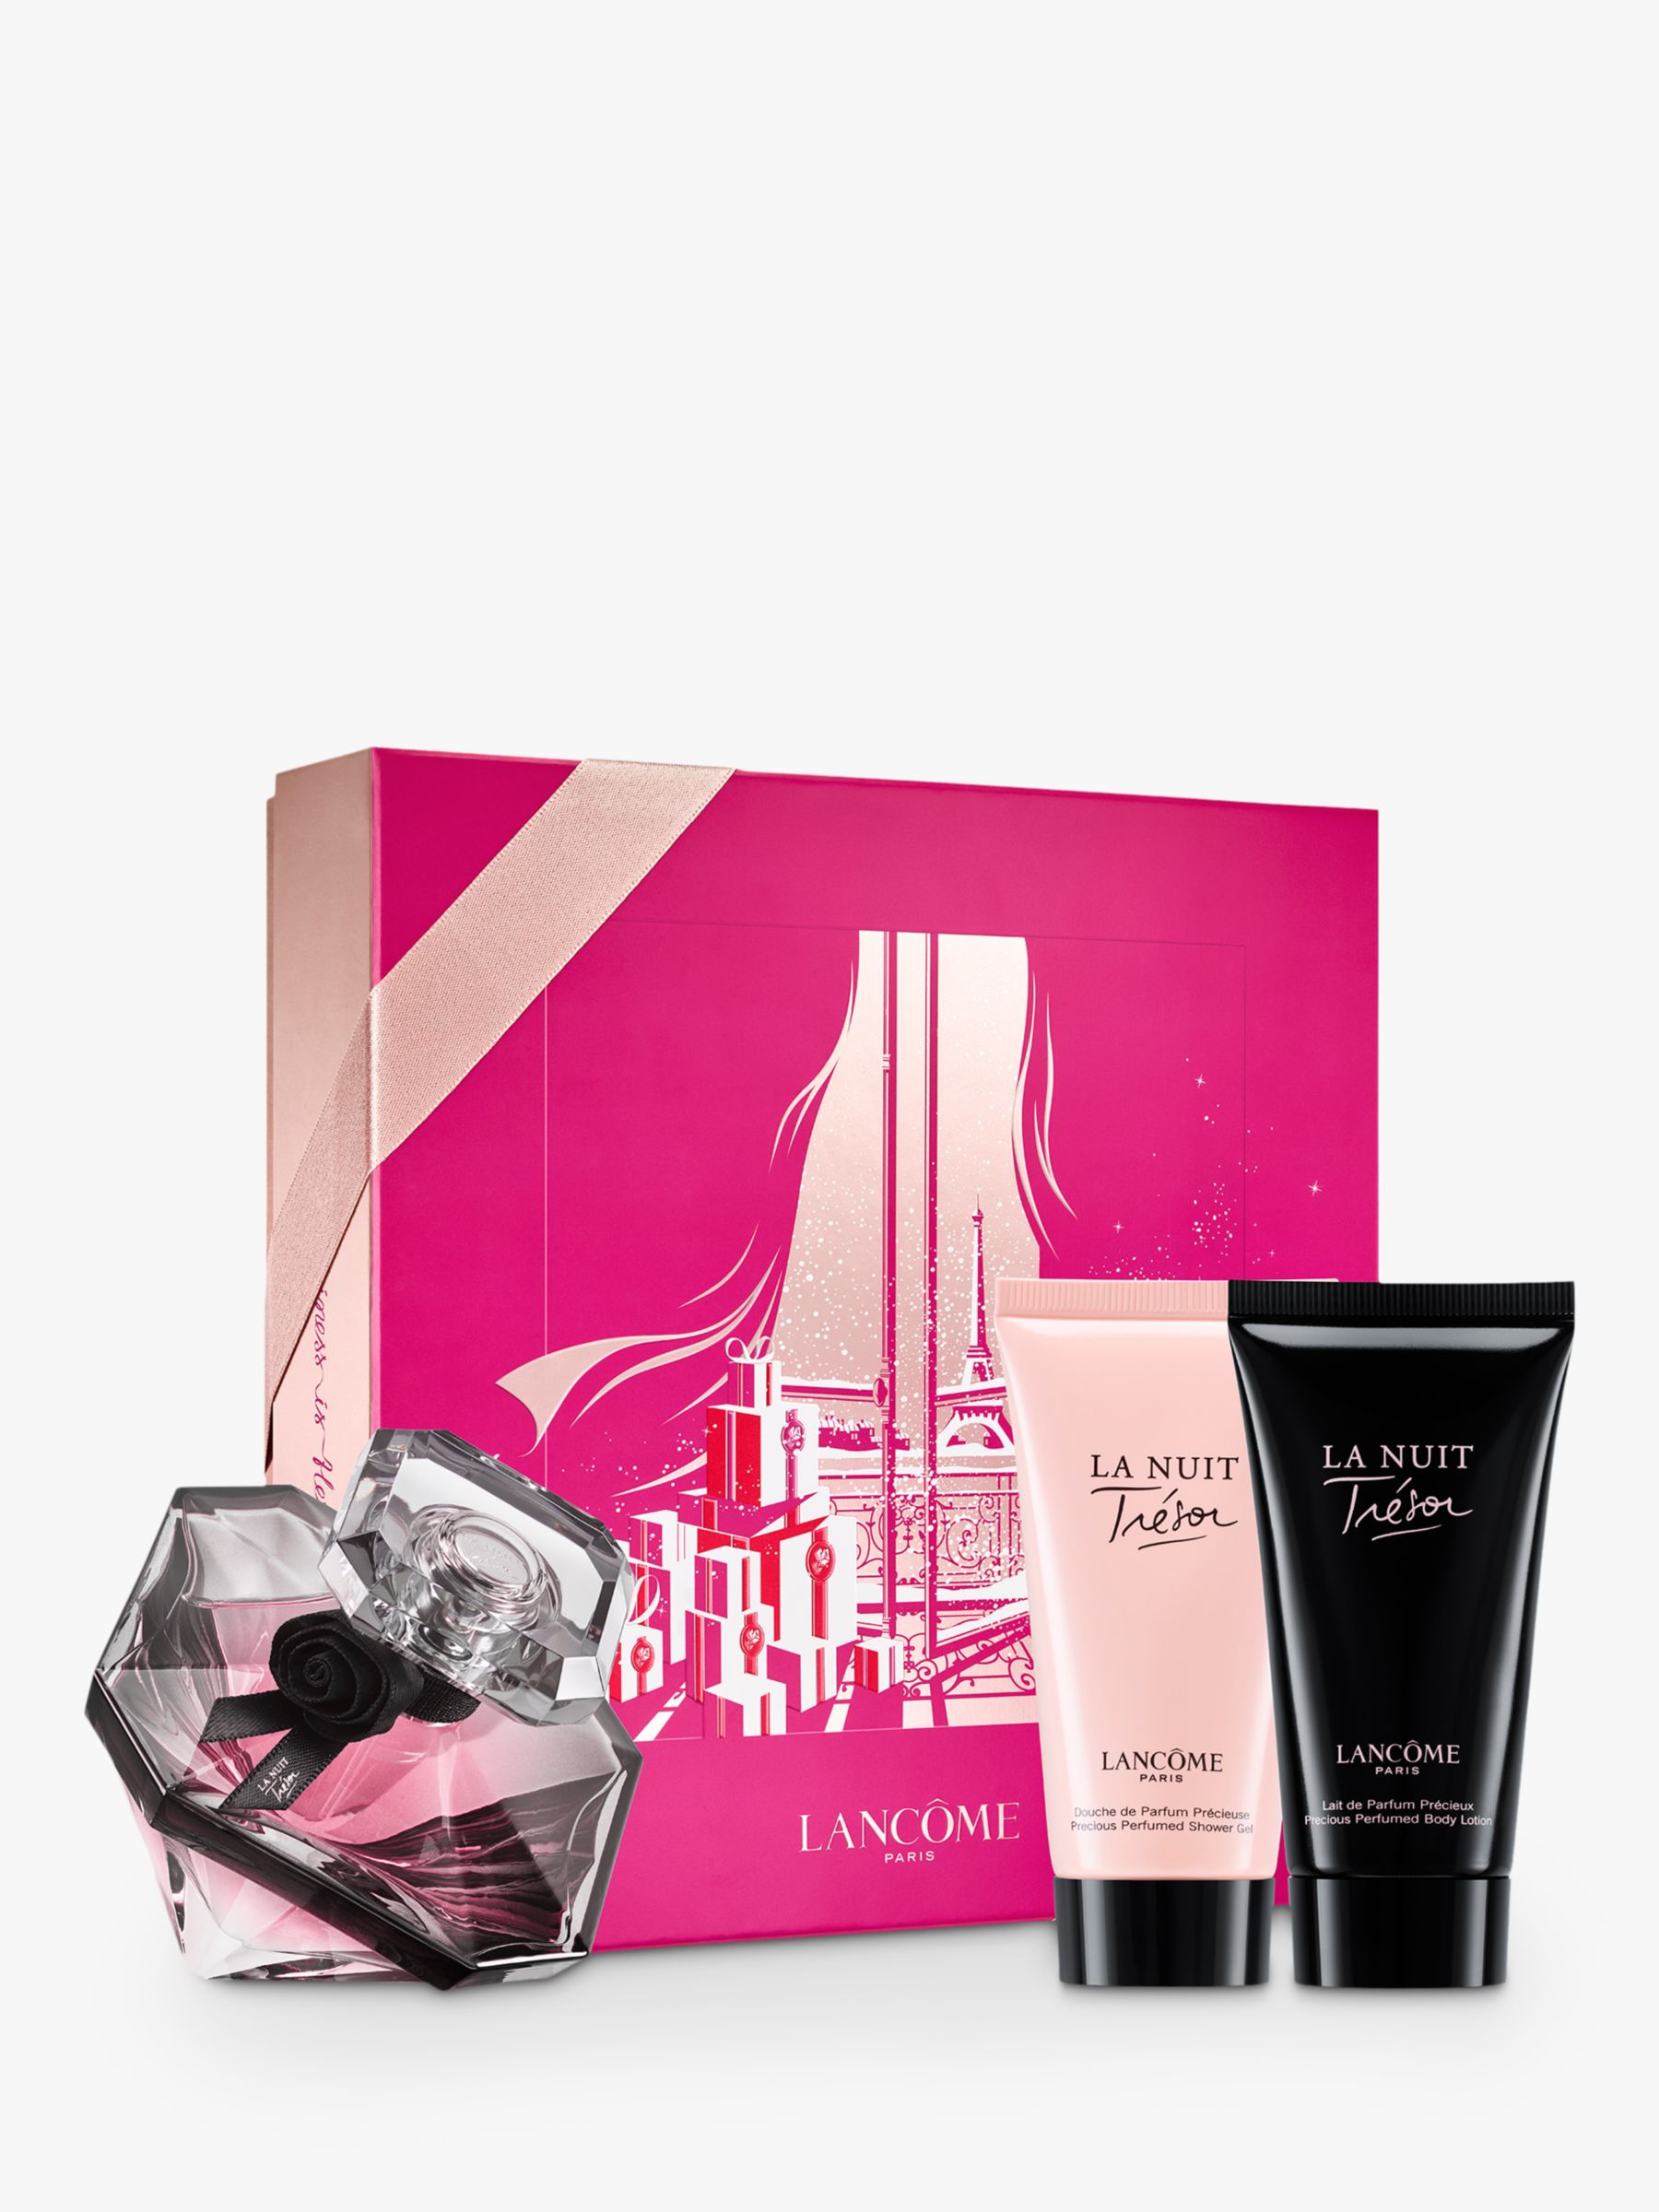 Lancôme La Nuit Trésor 50ml Eau de Parfum Fragrance Gift Set at John Lewis & Partners